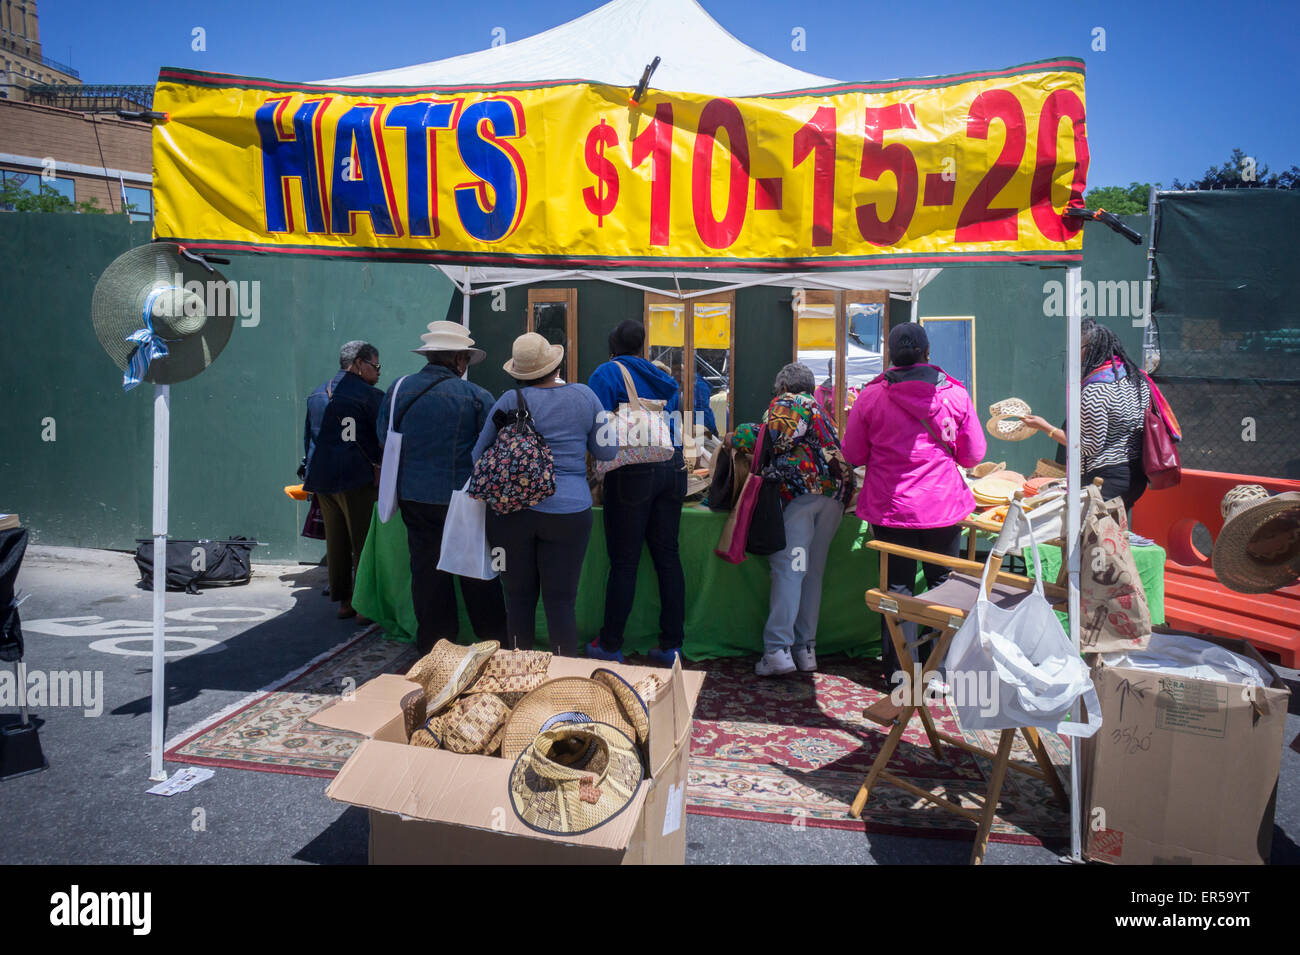 Les chapeaux à Shoppers parcourir DanceAfrica juste en dehors de la rue la Brooklyn Academy of Music de New York le Samedi, Mai 23, 2015. Plus de 200 vendeurs de produits sur le thème de l'Afrique de participer dans le cadre de l'Académie DanceAfrica Festival. (© Richard B. Levine) Banque D'Images